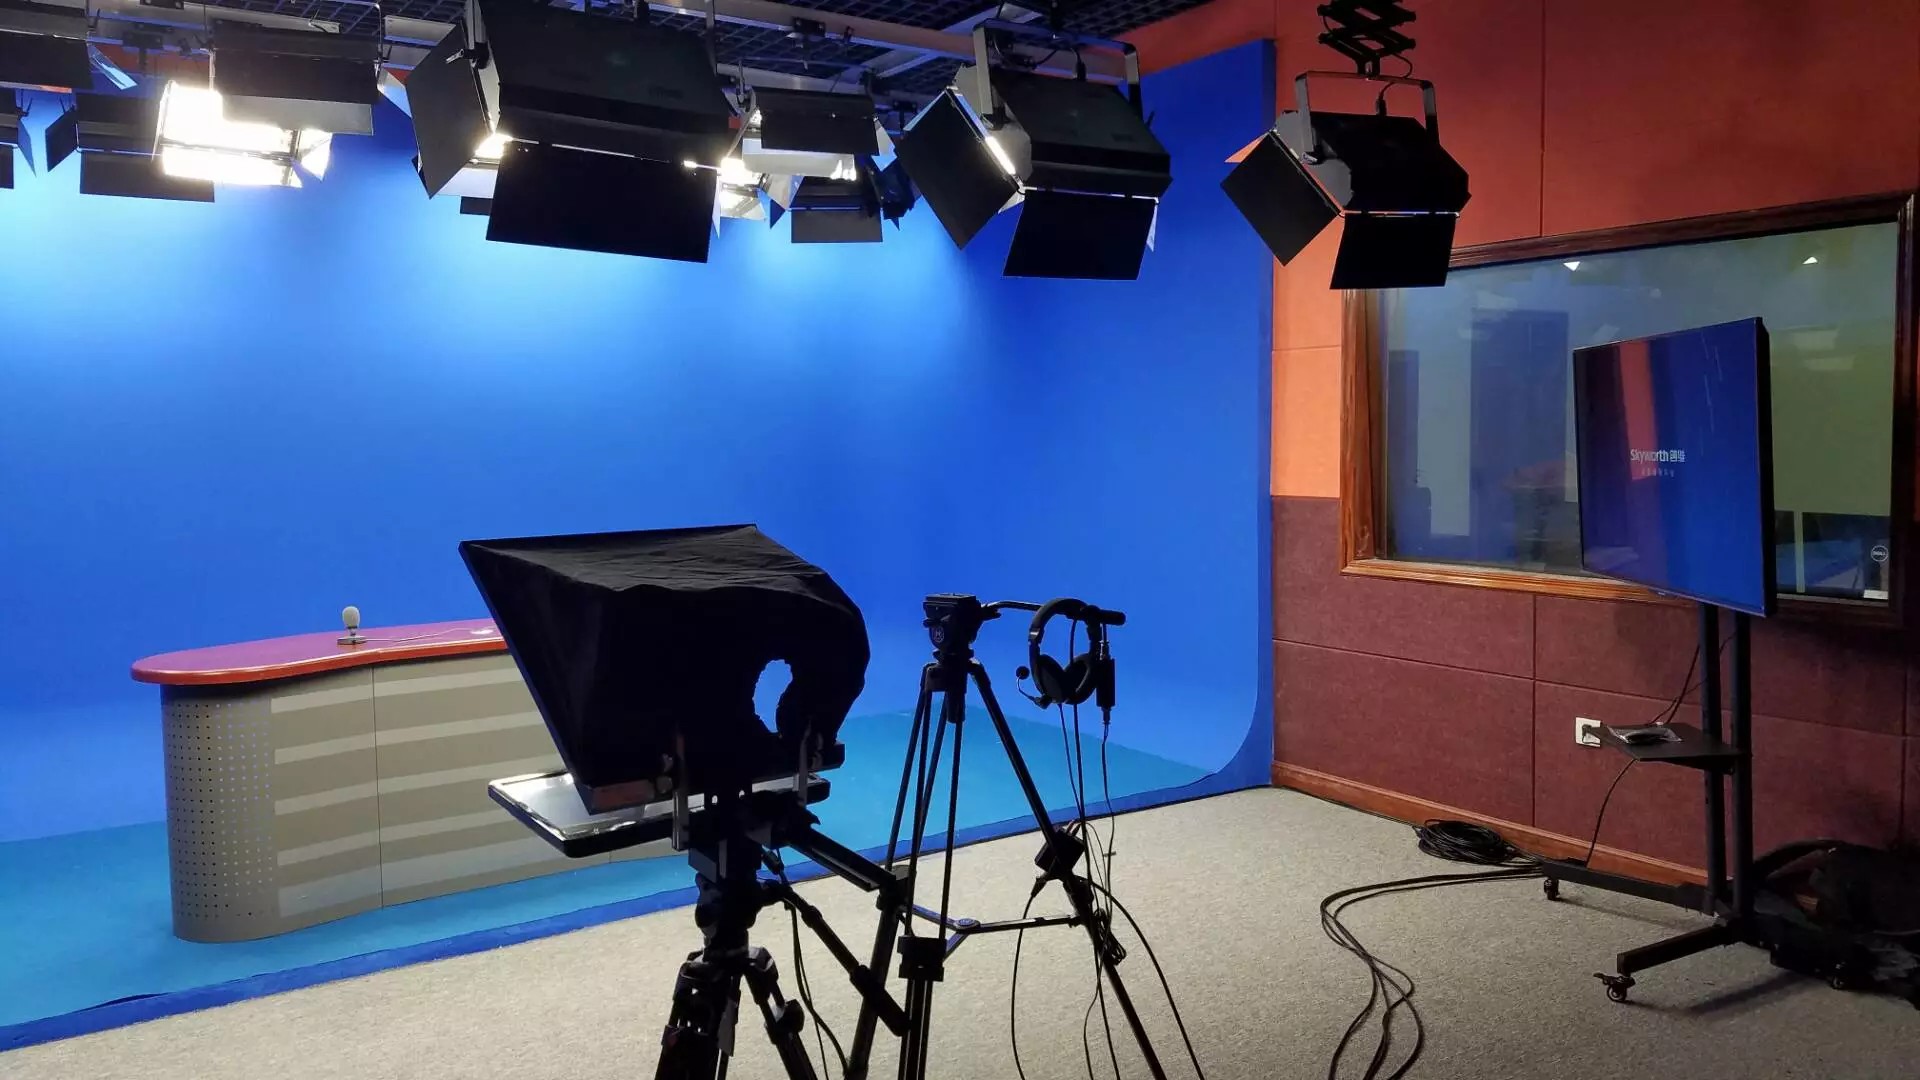 迪特康姆虚拟演播室系统 设备清单及灯光装修方案